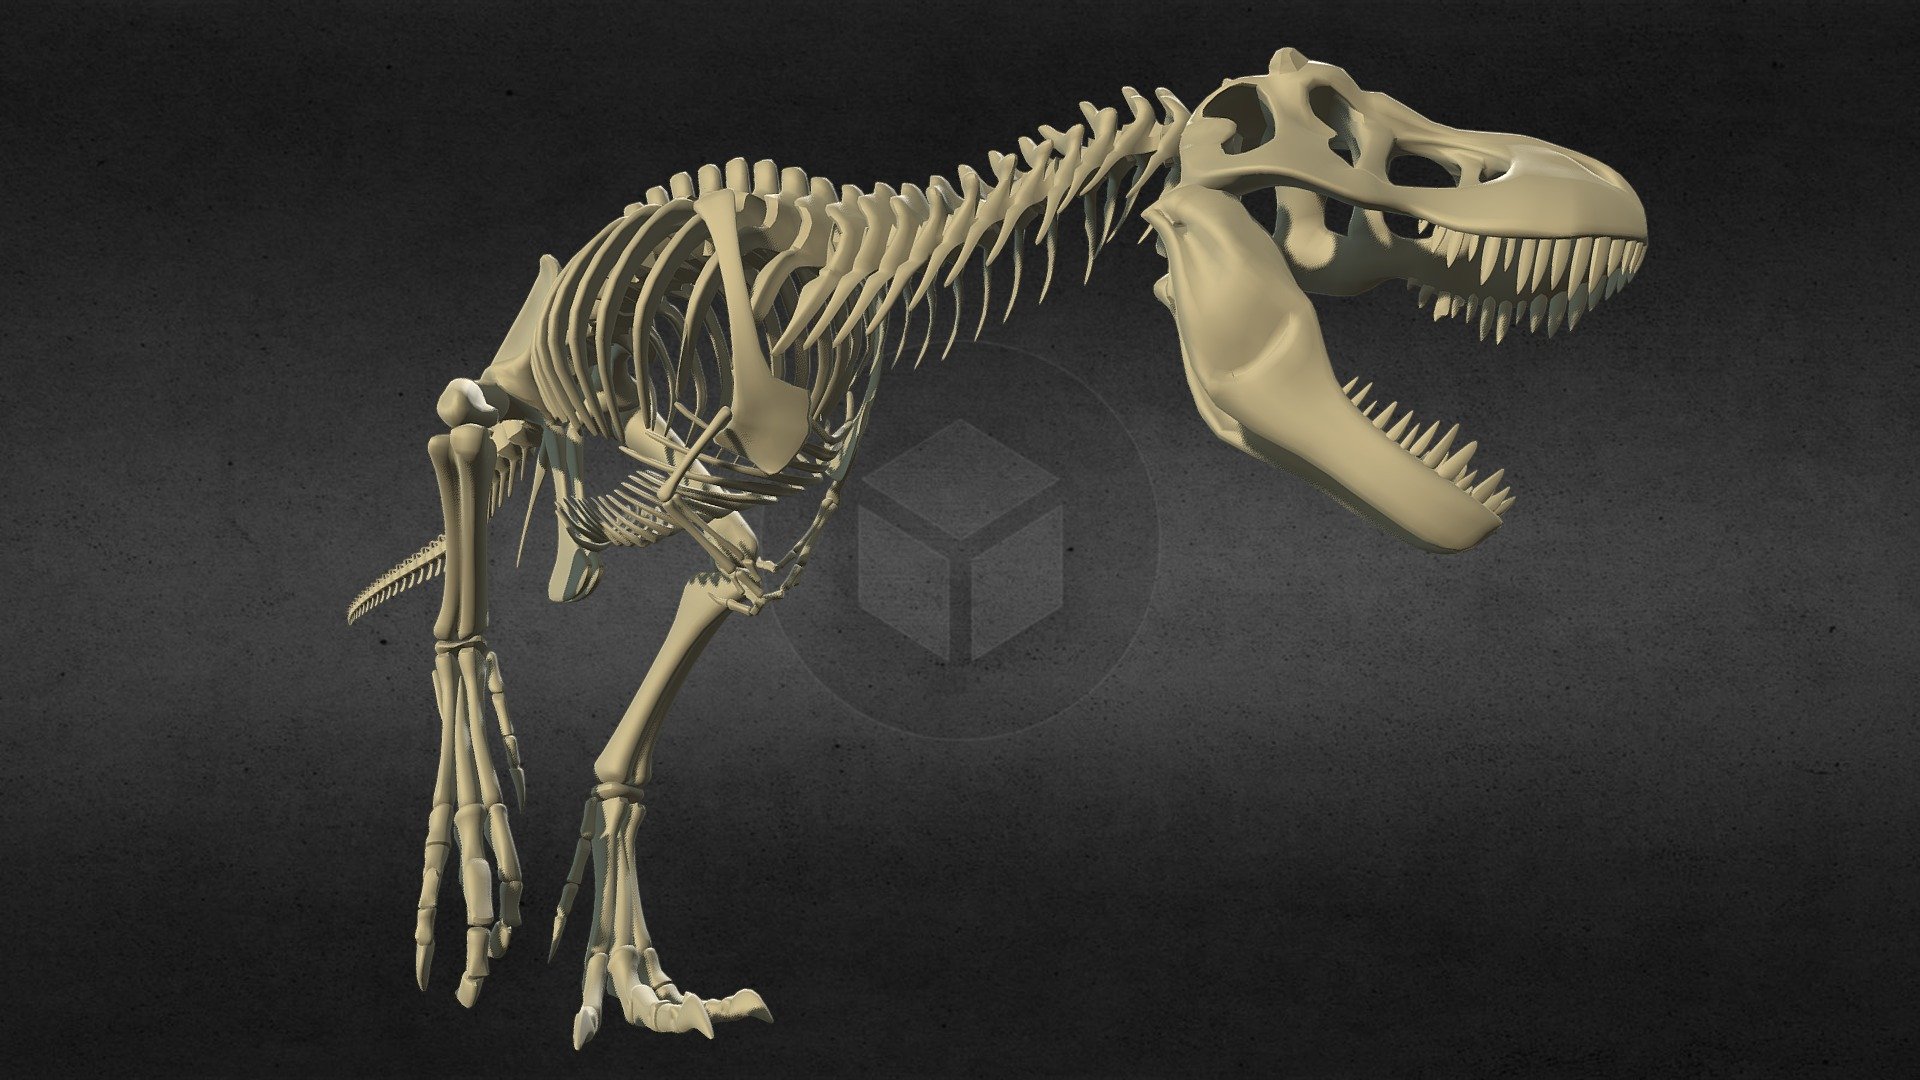 Tyrannosaurus rex dragon bone - Tyrannosaurus rex dragon bone - 3D model by llllline 3d model